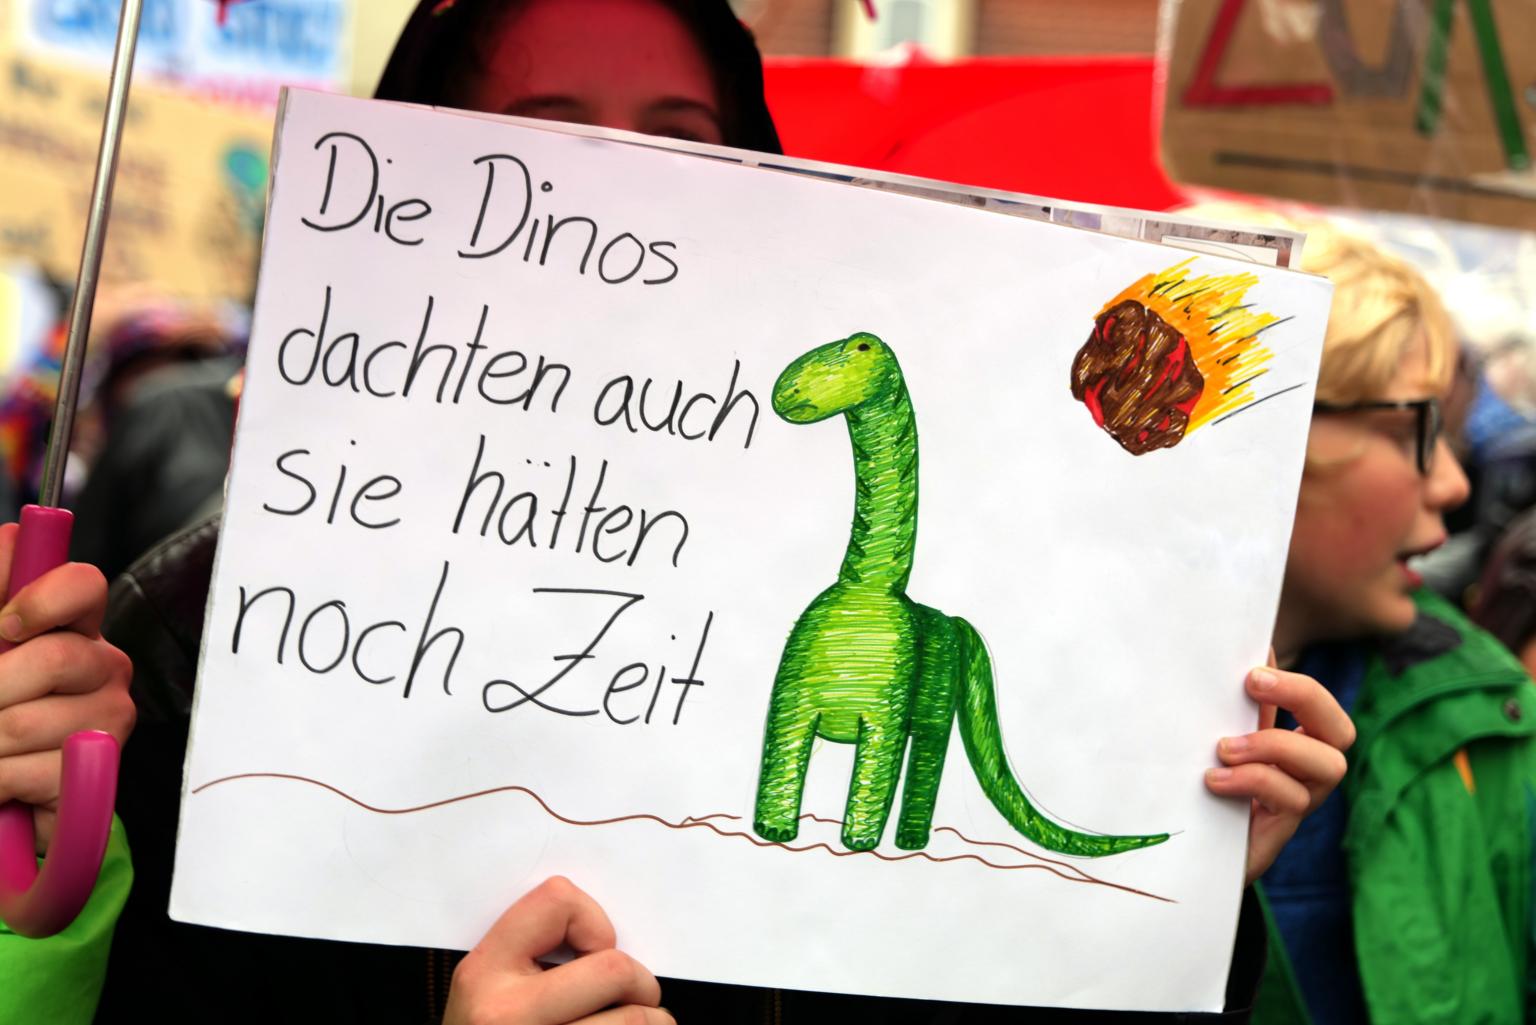 Die Dinos dachten auch sie hätten noch Zeit (c) Peter Wiedemann by Pfarrbriefservice